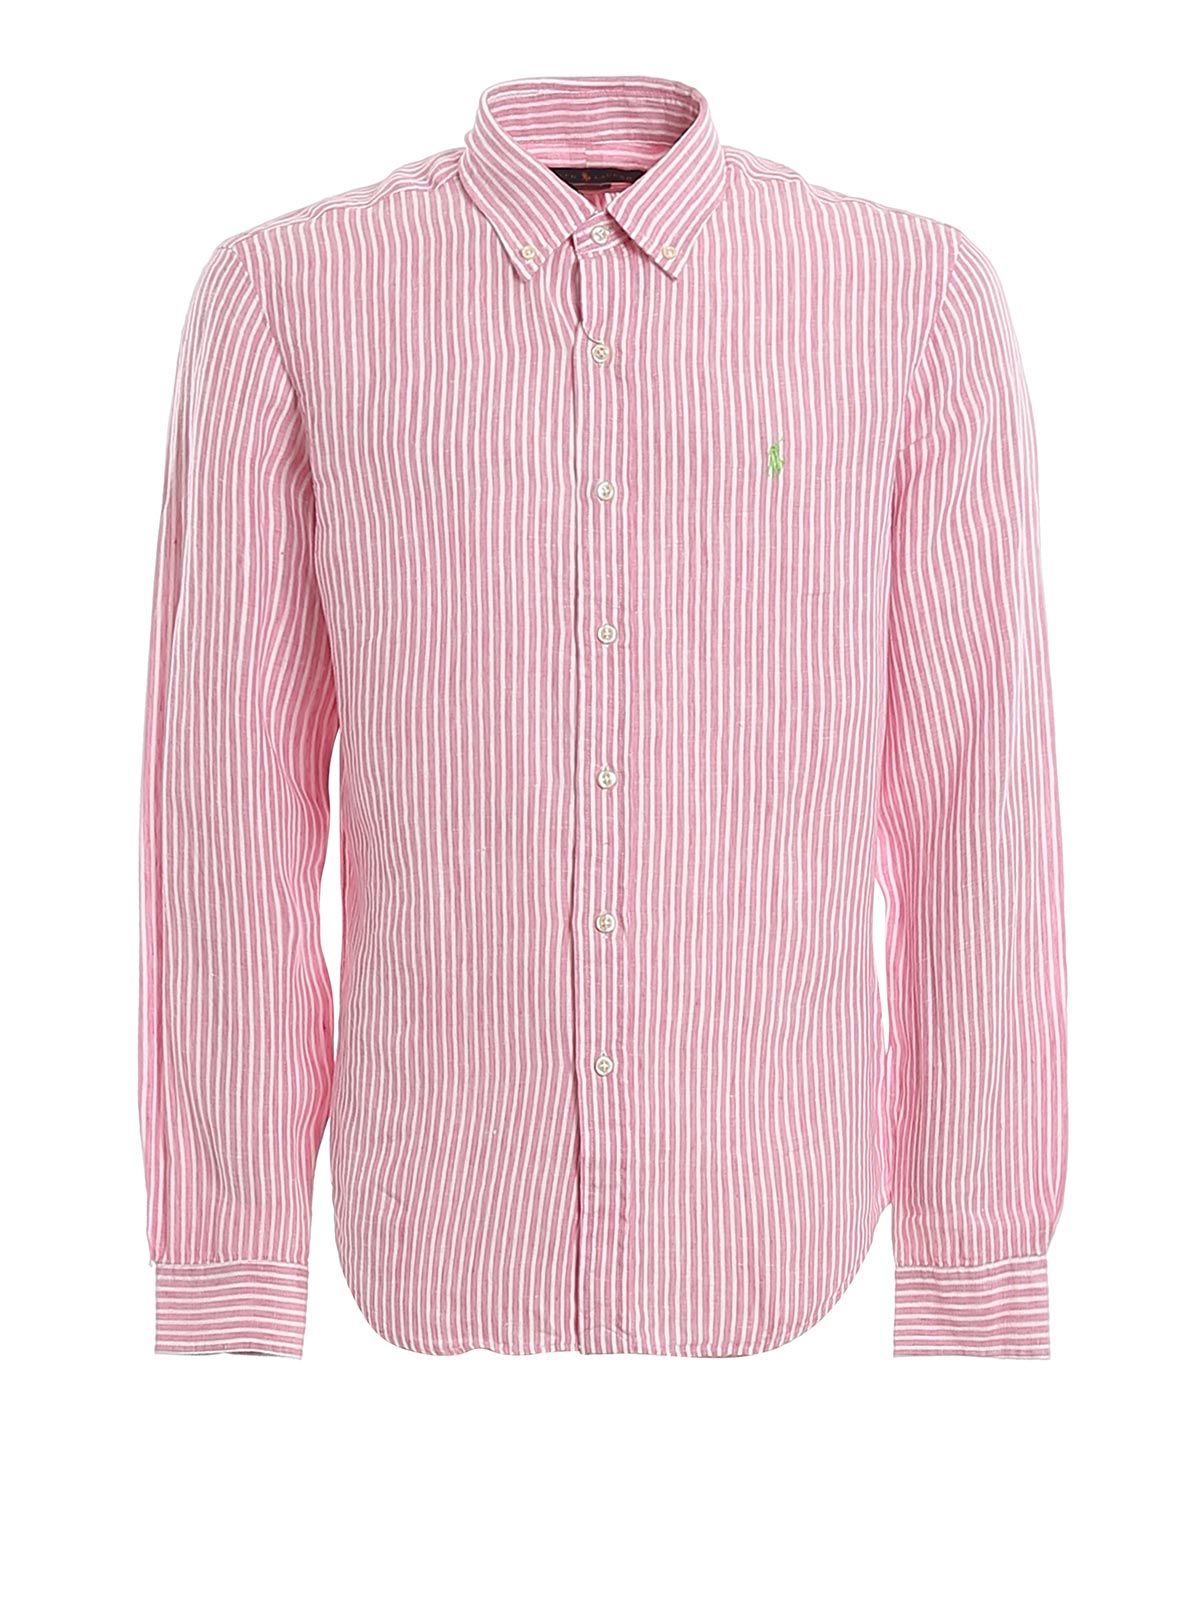 ralph lauren men's pink linen shirt